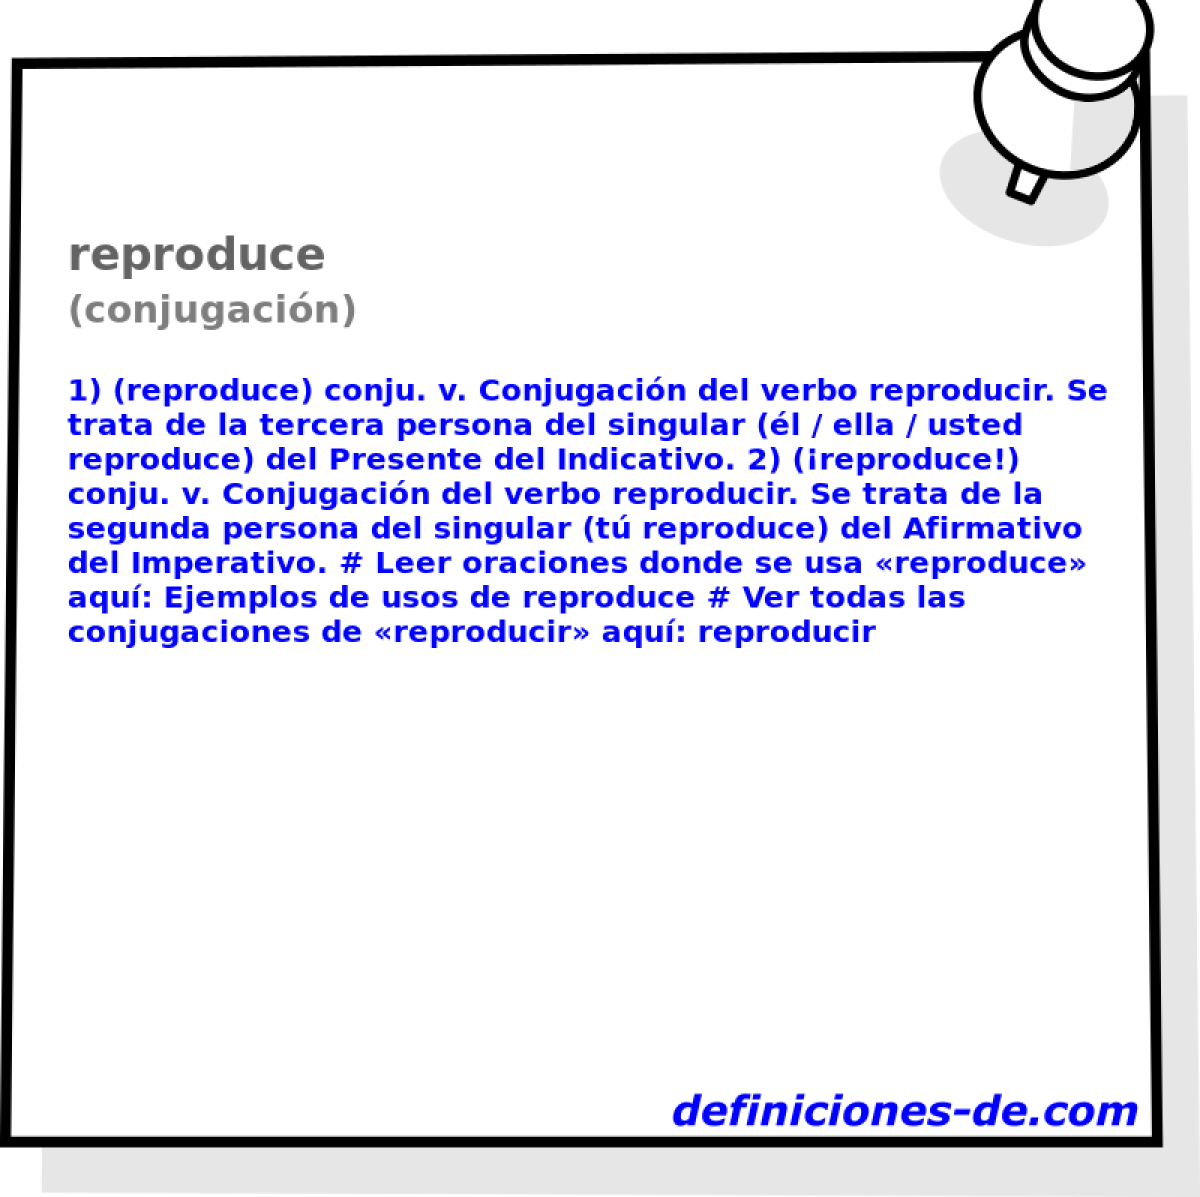 reproduce (conjugacin)